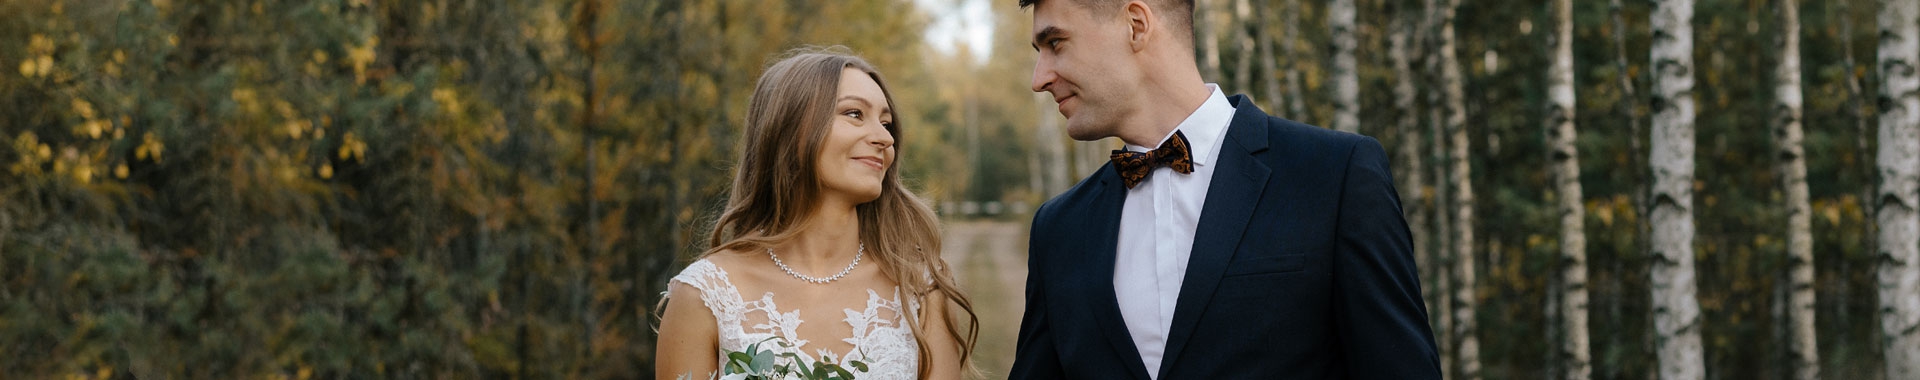 Zdjęcia ślubne z Krakowa - Reportaż ze ślubny Kamili i Tomasza